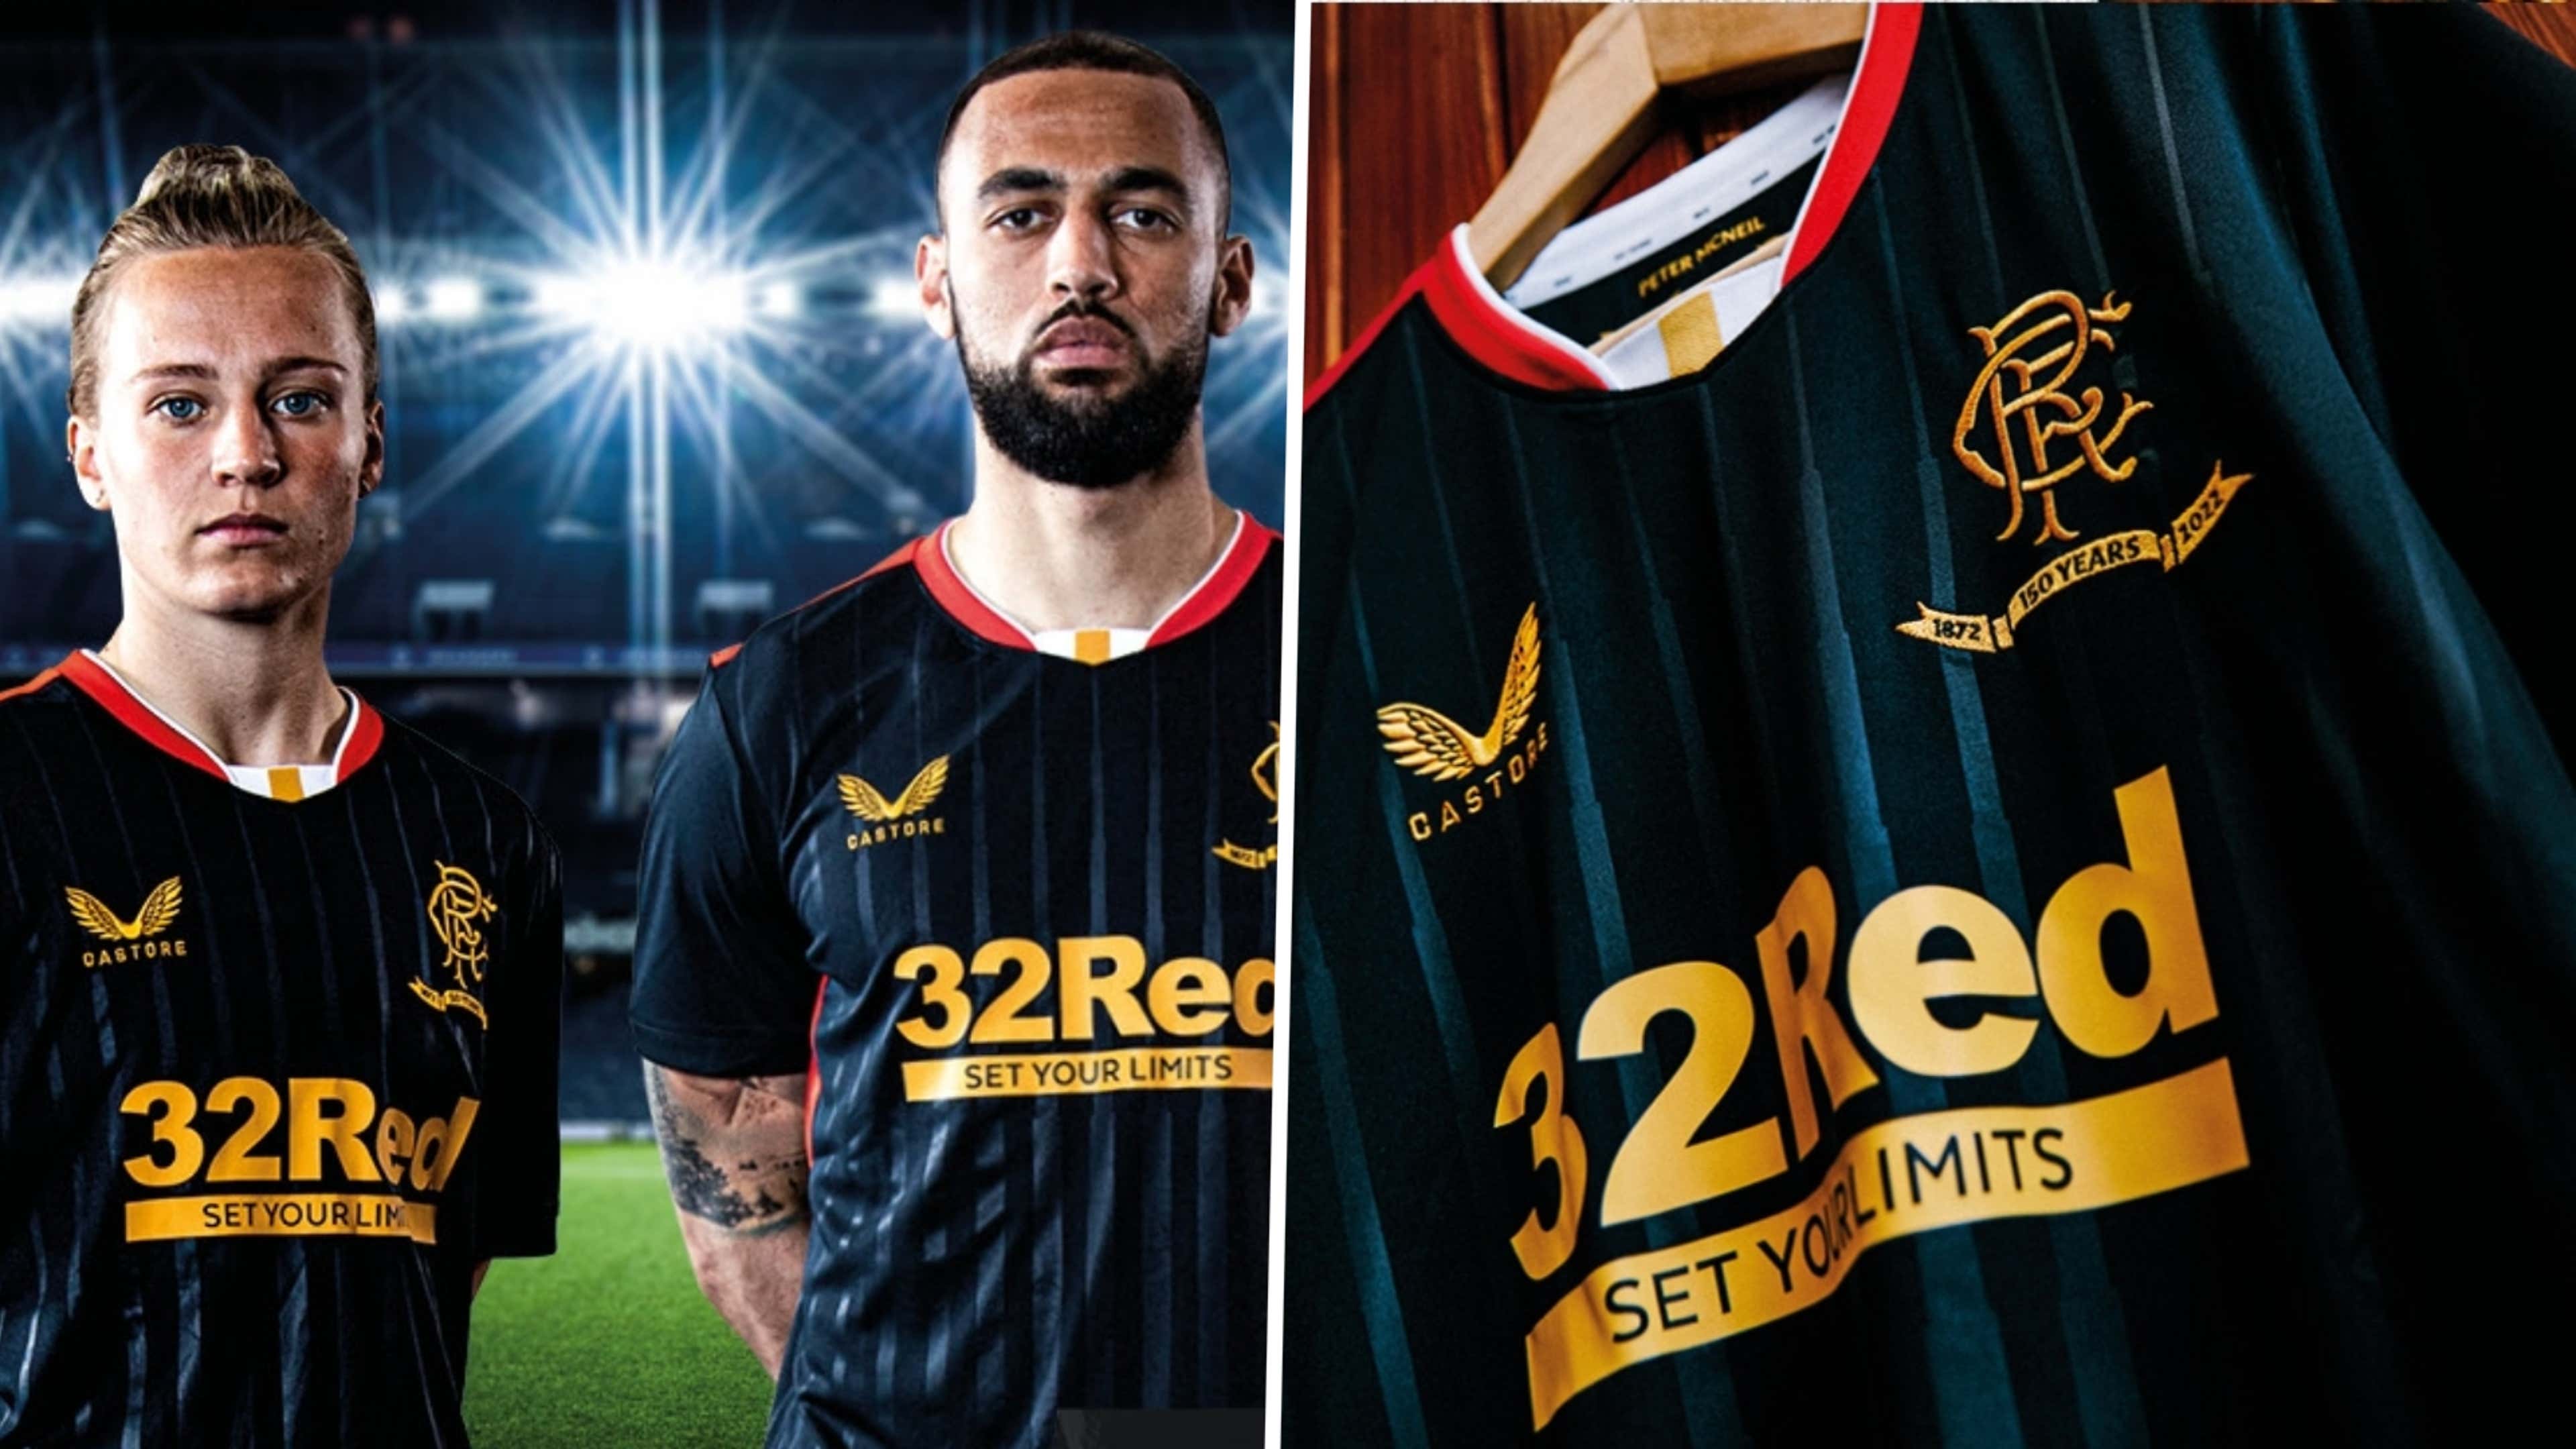  Castore 2021-2022 Rangers Third Football Soccer T-Shirt Jersey  : Sports & Outdoors